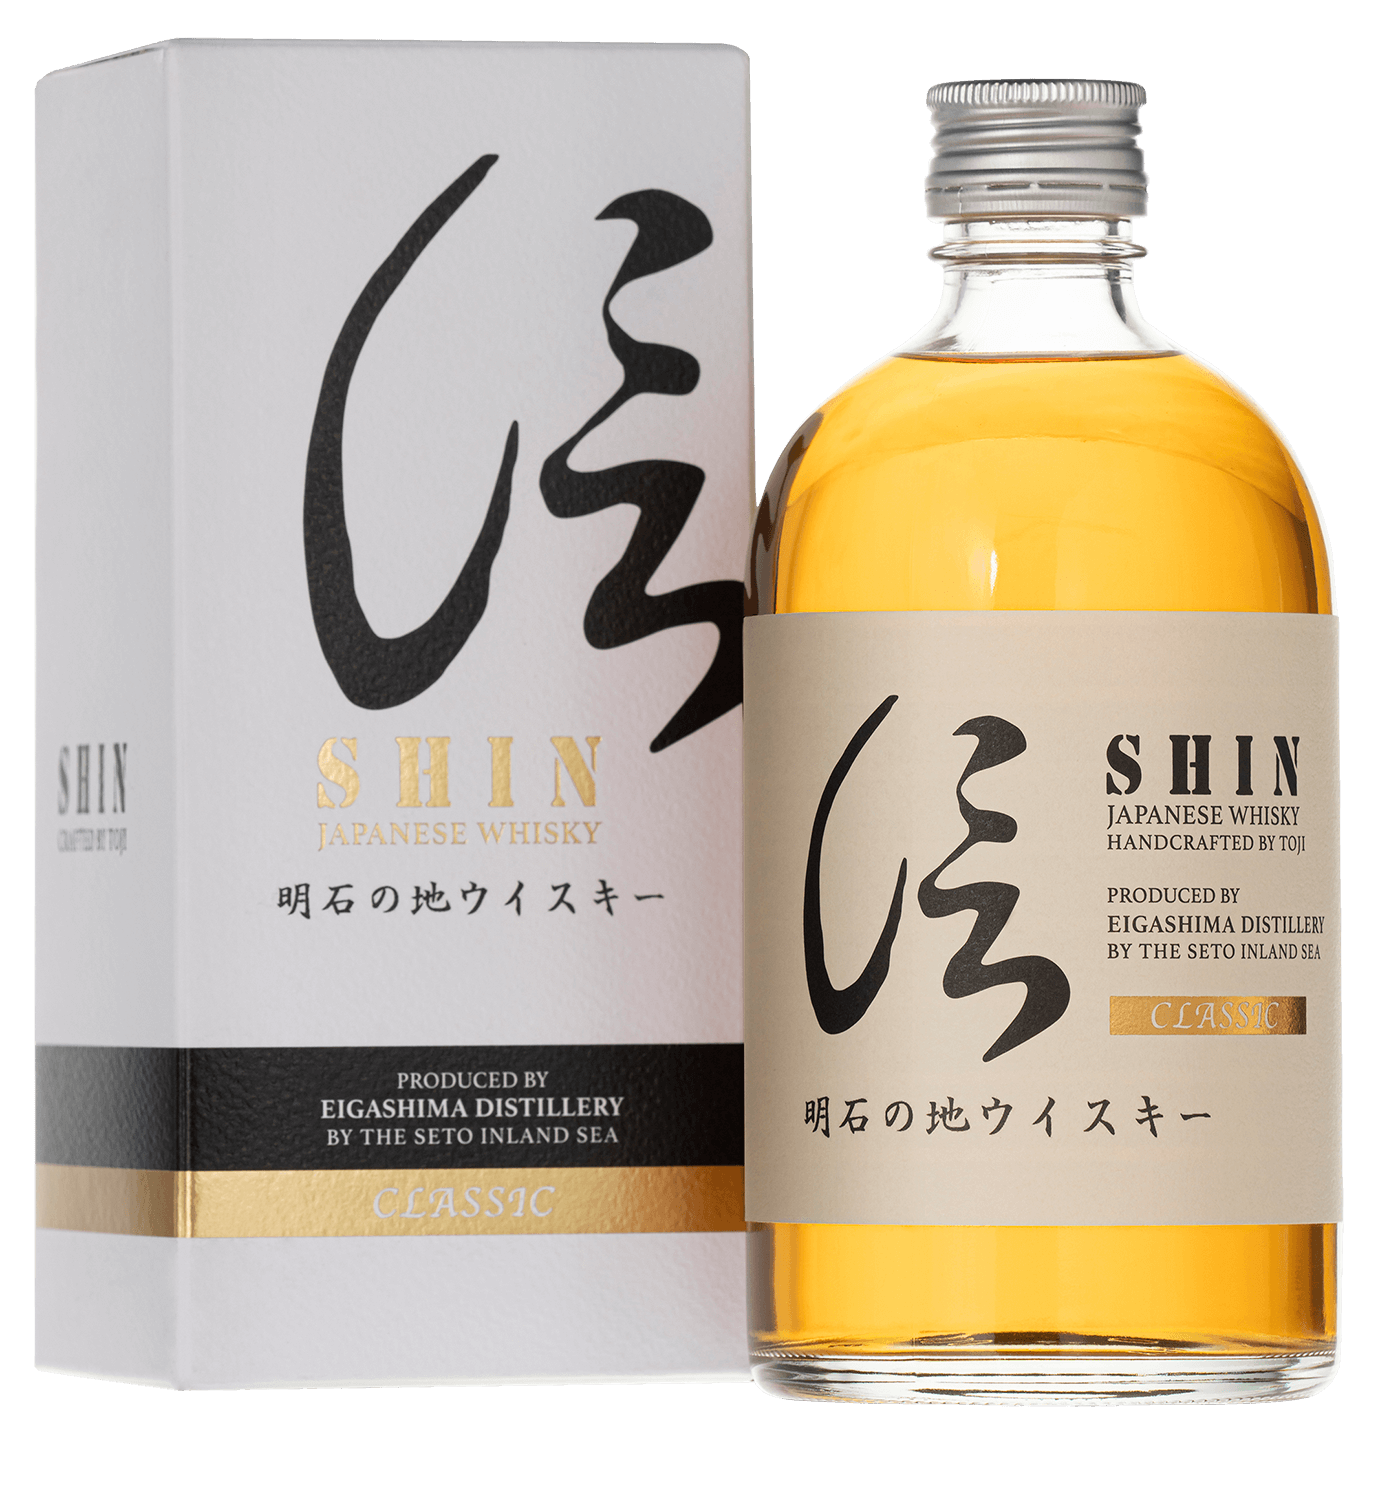 Shin Classic Blended Japanese Whisky